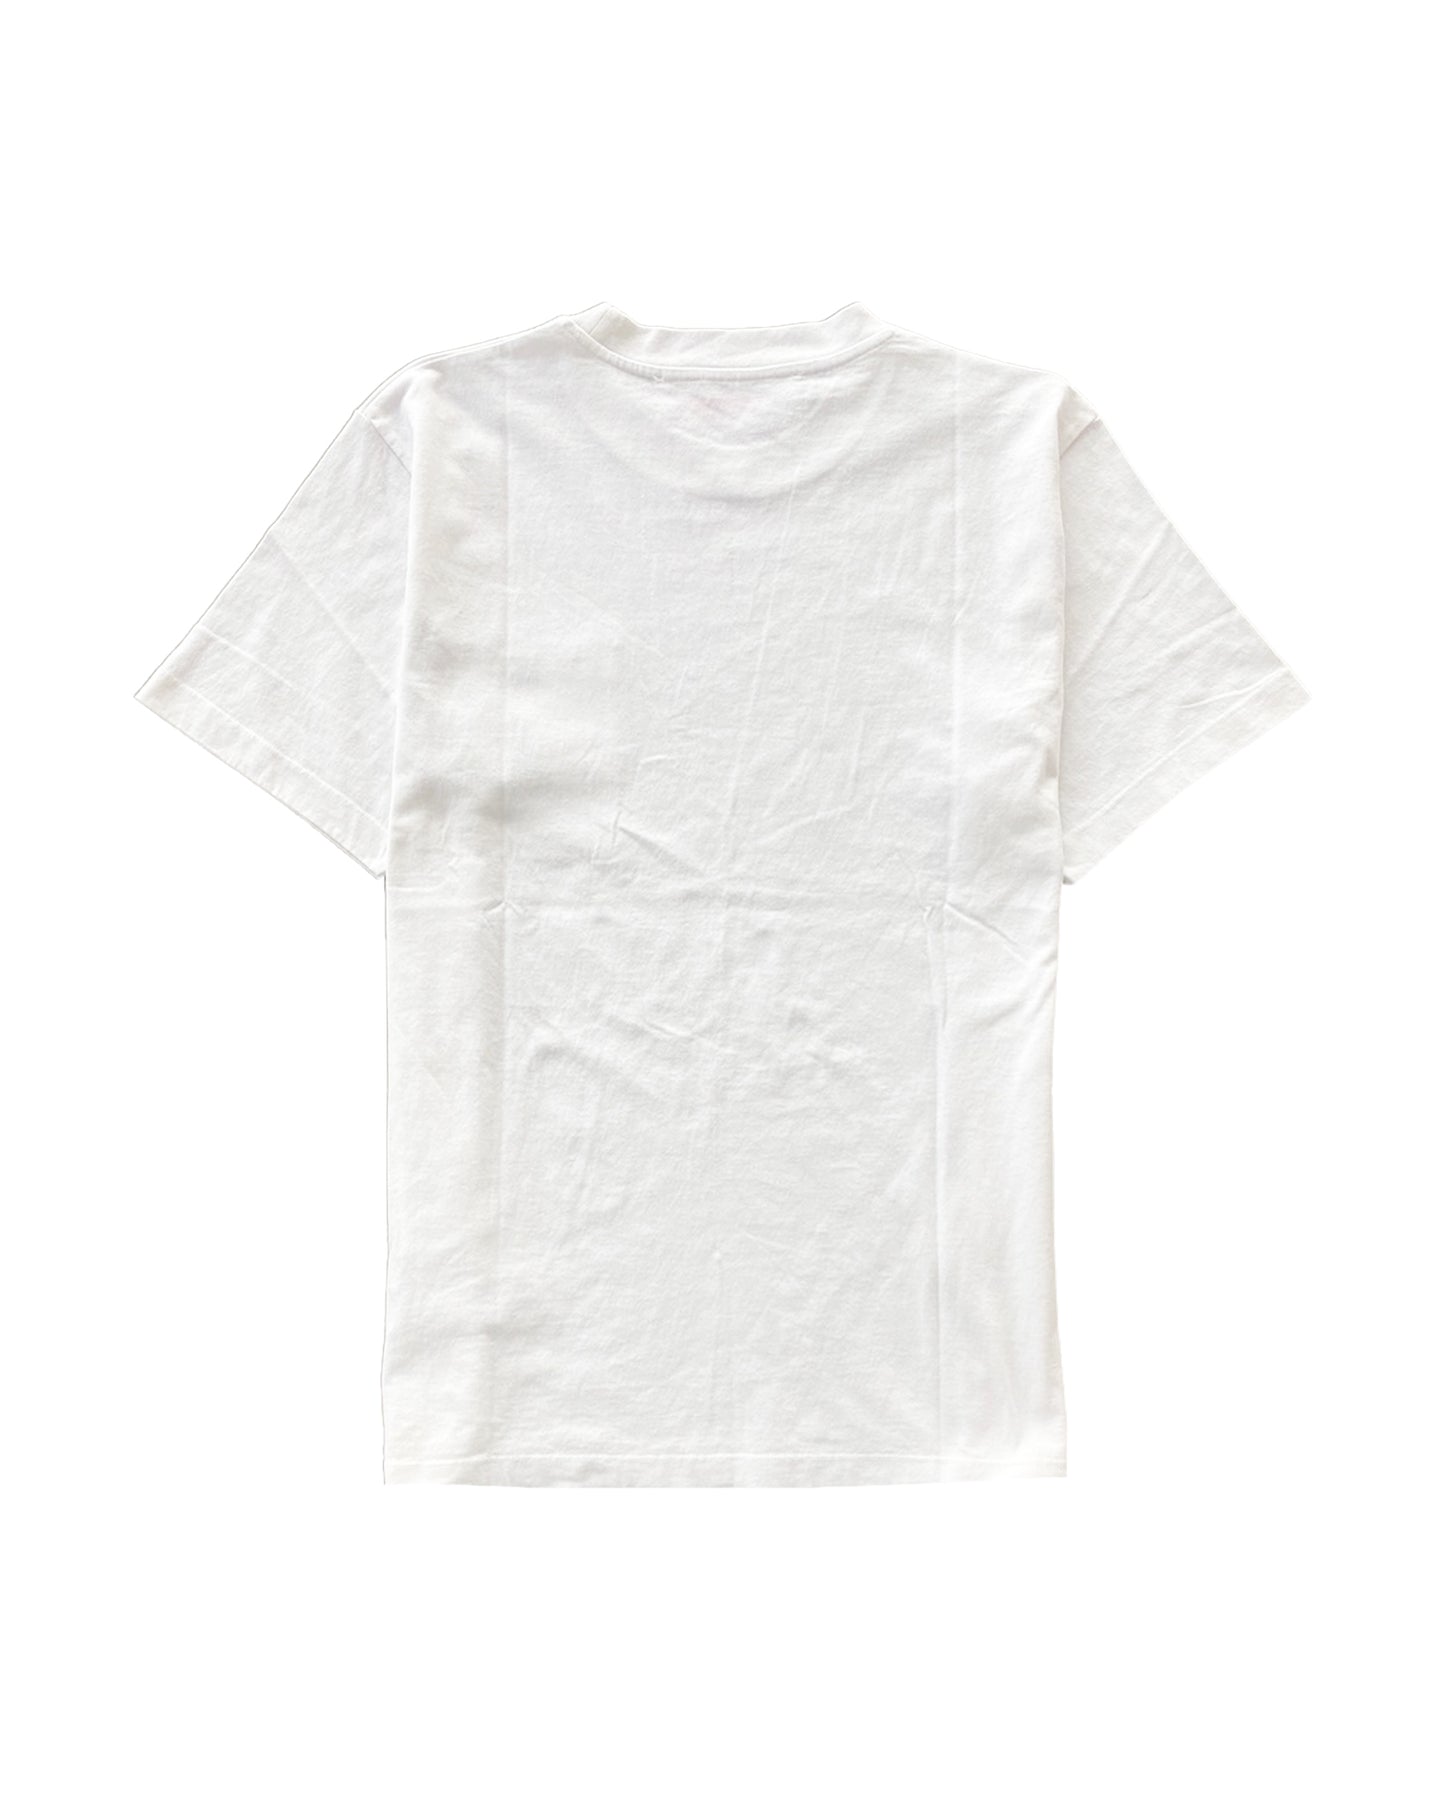 オフホワイト/Diag pkt slim s/s tee/Tシャツ/White